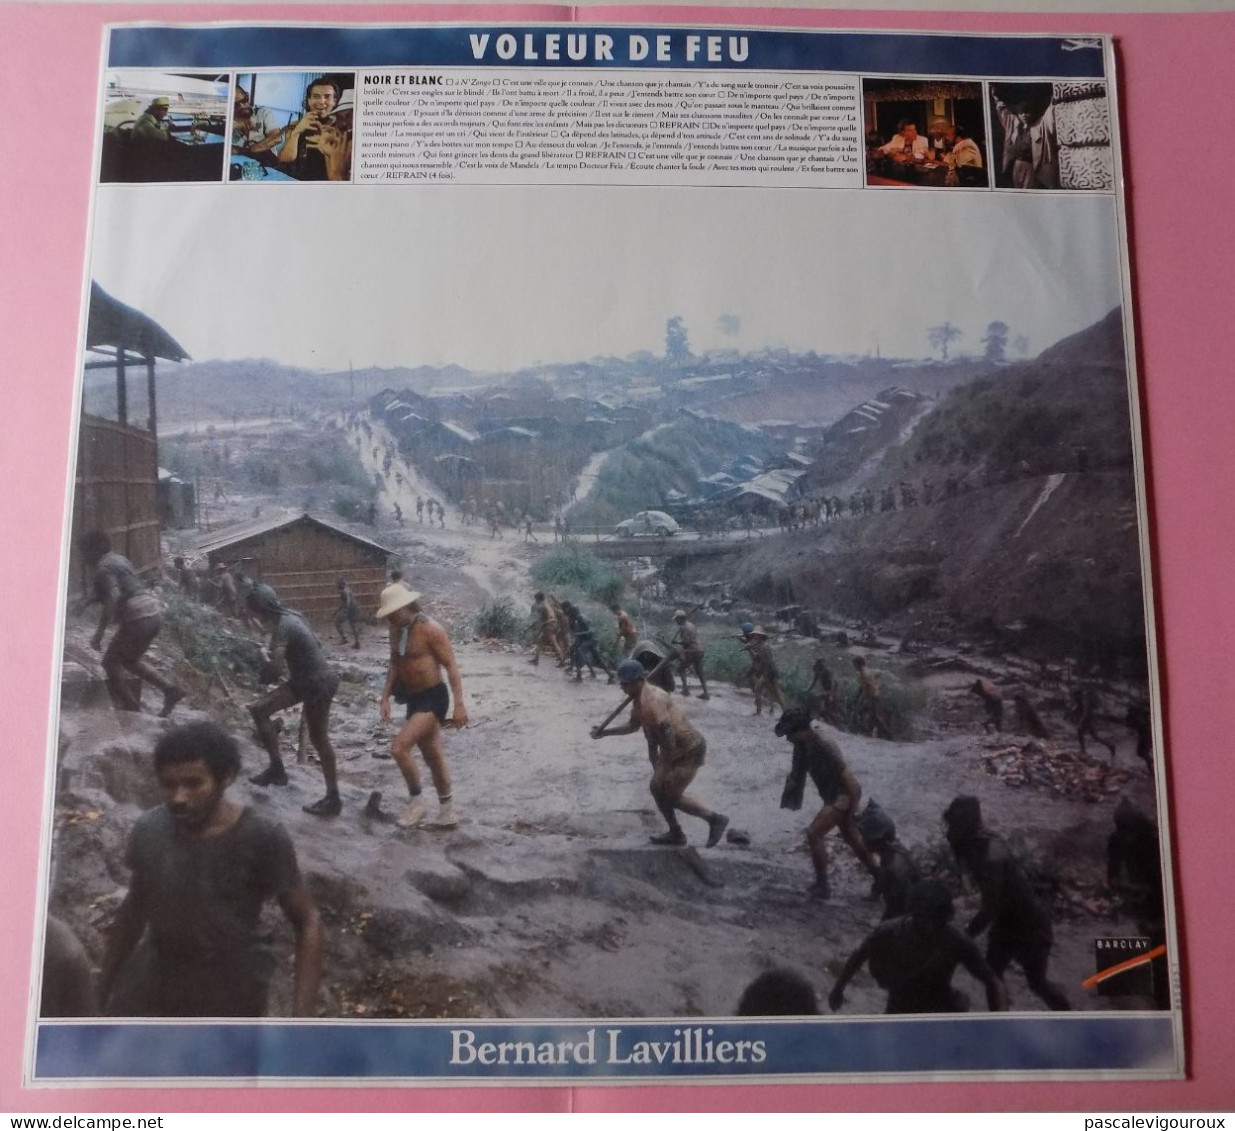 BERNARD LAVILLIERS VOLEUR DE FEU DOUBLE 33T LP 1986 BARCLAY 829.341/1 2 Disques - Sonstige - Franz. Chansons